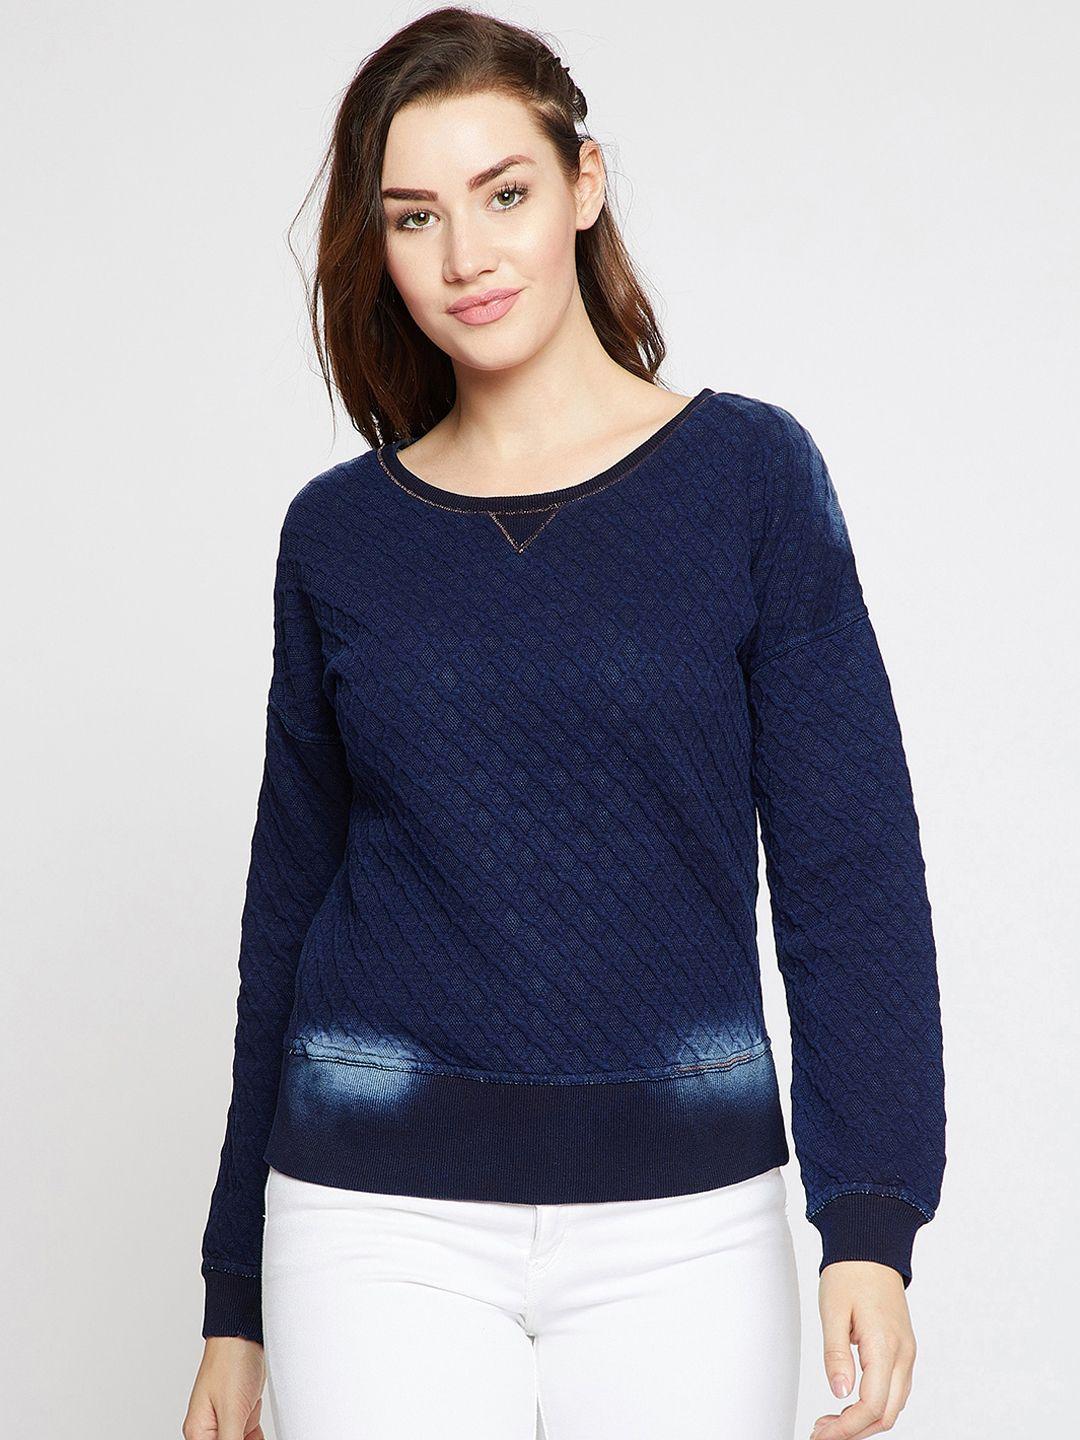 carlton-london-women-blue-solid-sweatshirt